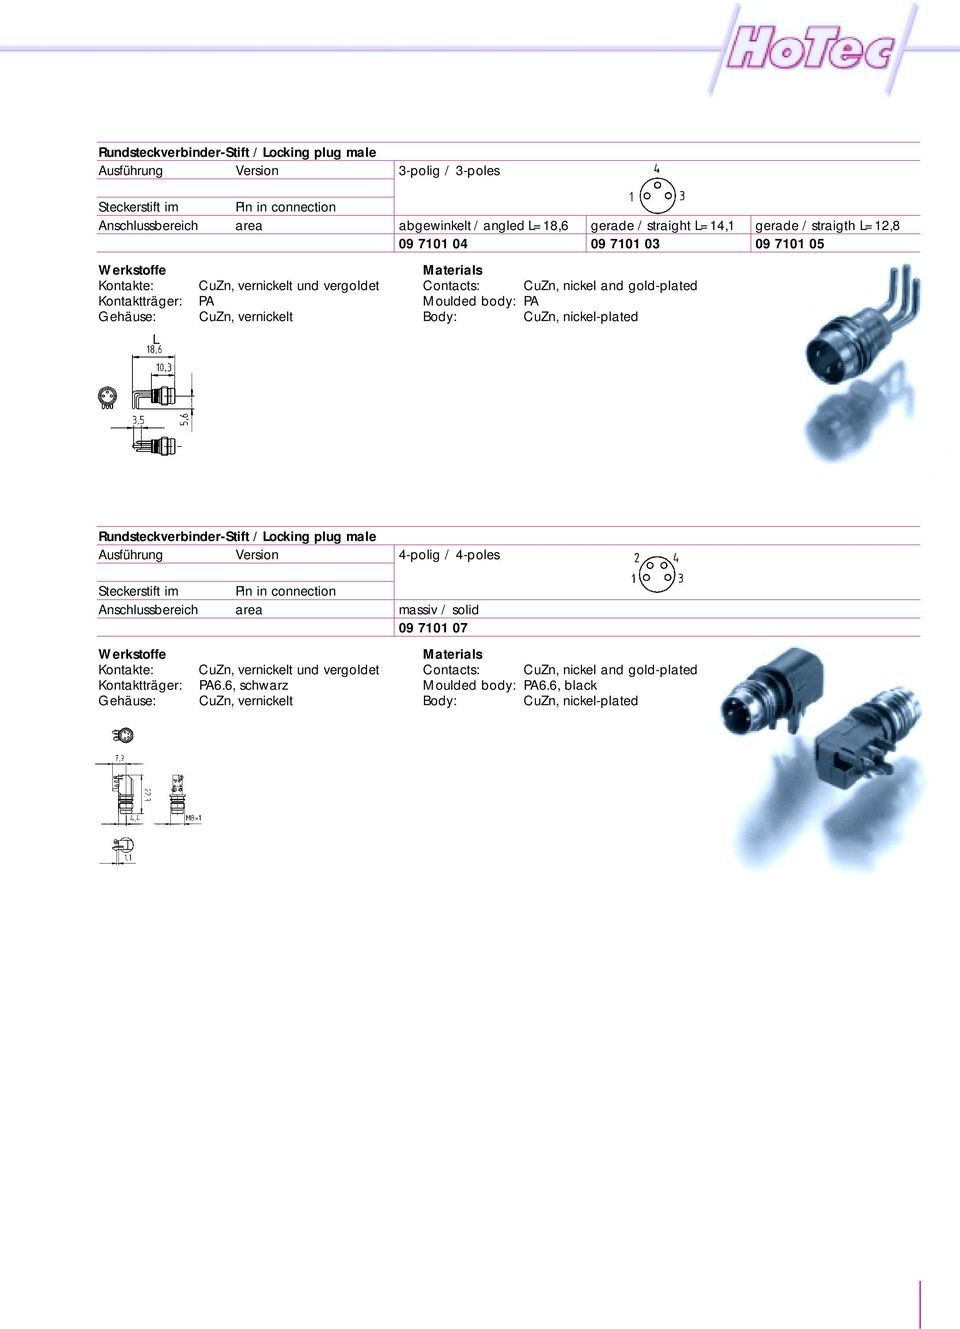 body: PA CuZn, nickel-plated Rundsteckverbinder-Stift / Locking plug male Steckerstift im Anschlussbereich Kontakte: Kontaktträger: Gehäuse: Pin in